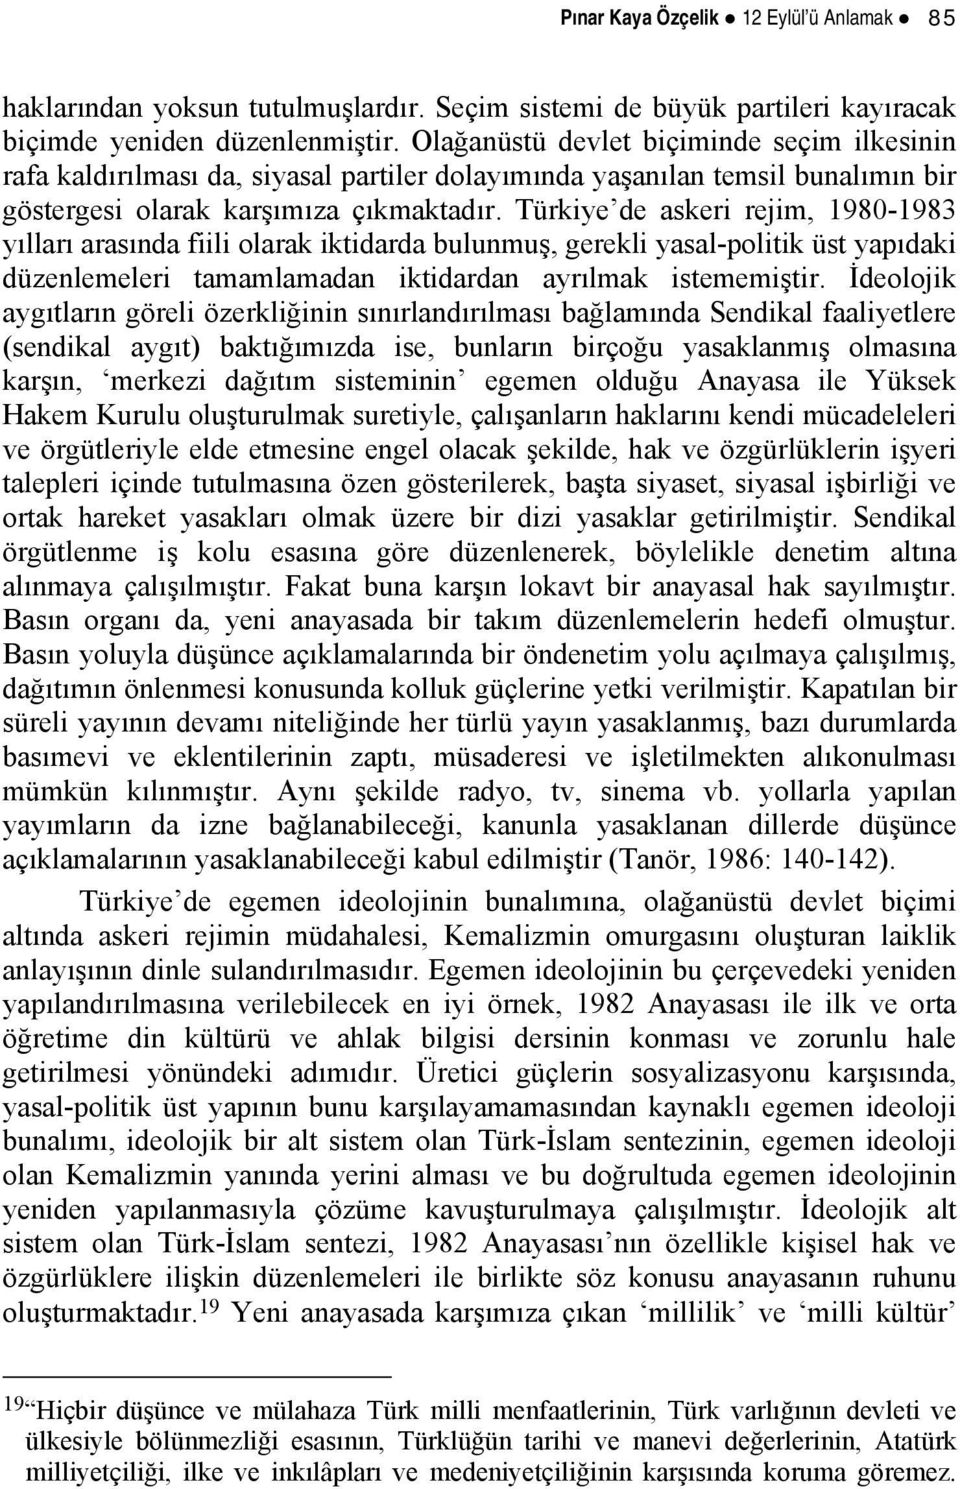 Türkiye de askeri rejim, 1980-1983 yılları arasında fiili olarak iktidarda bulunmuş, gerekli yasal-politik üst yapıdaki düzenlemeleri tamamlamadan iktidardan ayrılmak istememiştir.